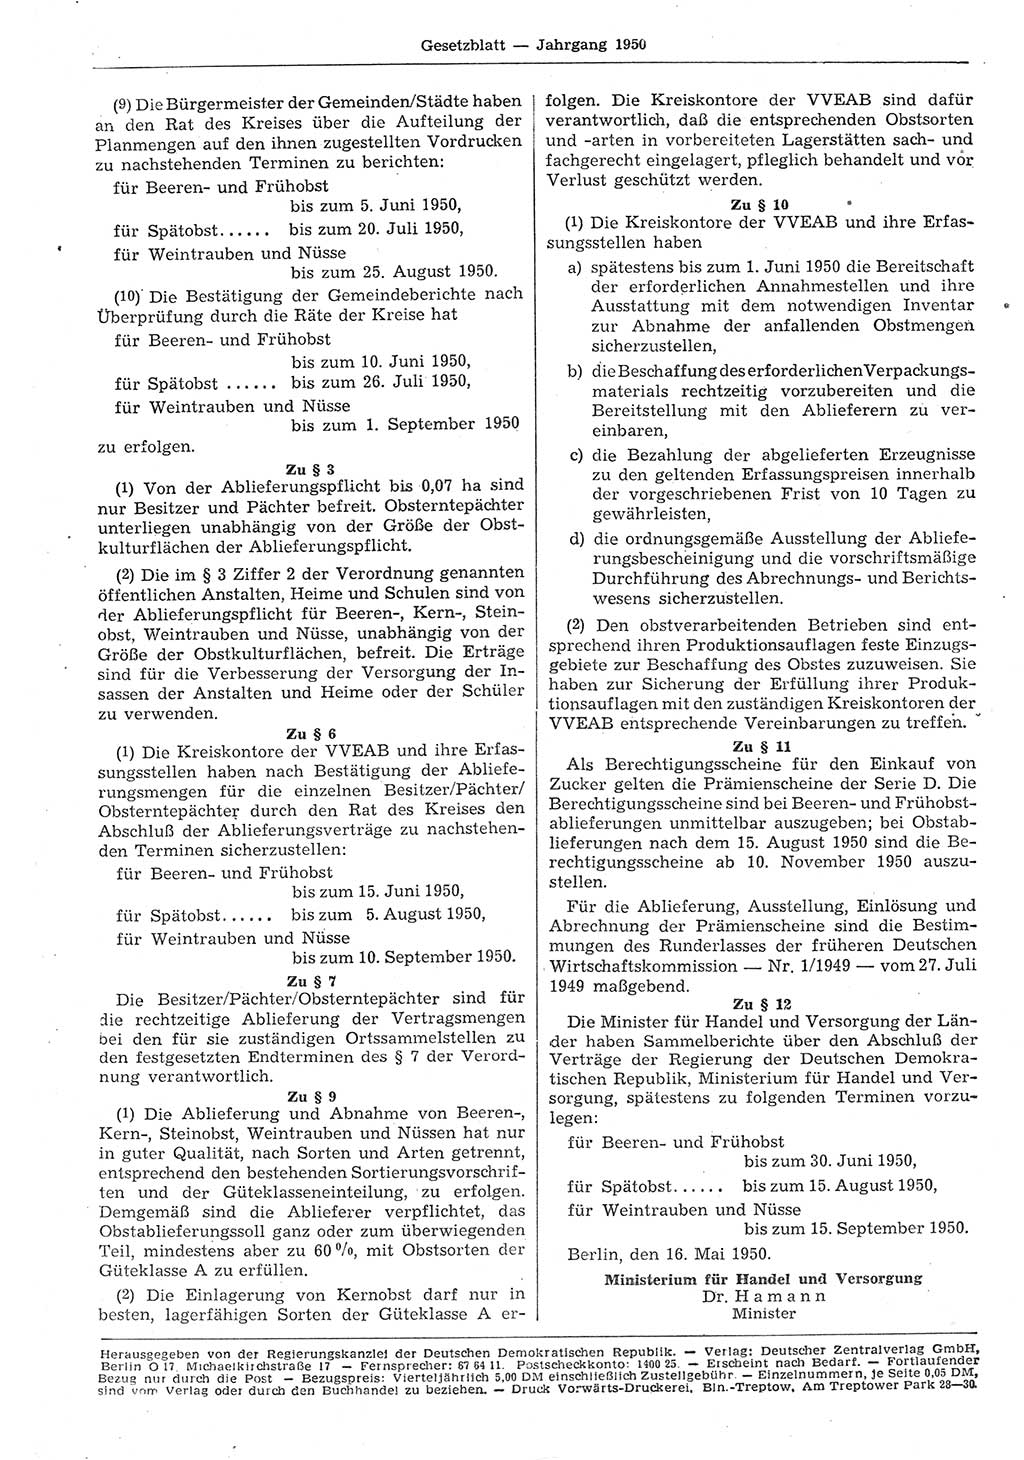 Gesetzblatt (GBl.) der Deutschen Demokratischen Republik (DDR) 1950, Seite 414 (GBl. DDR 1950, S. 414)